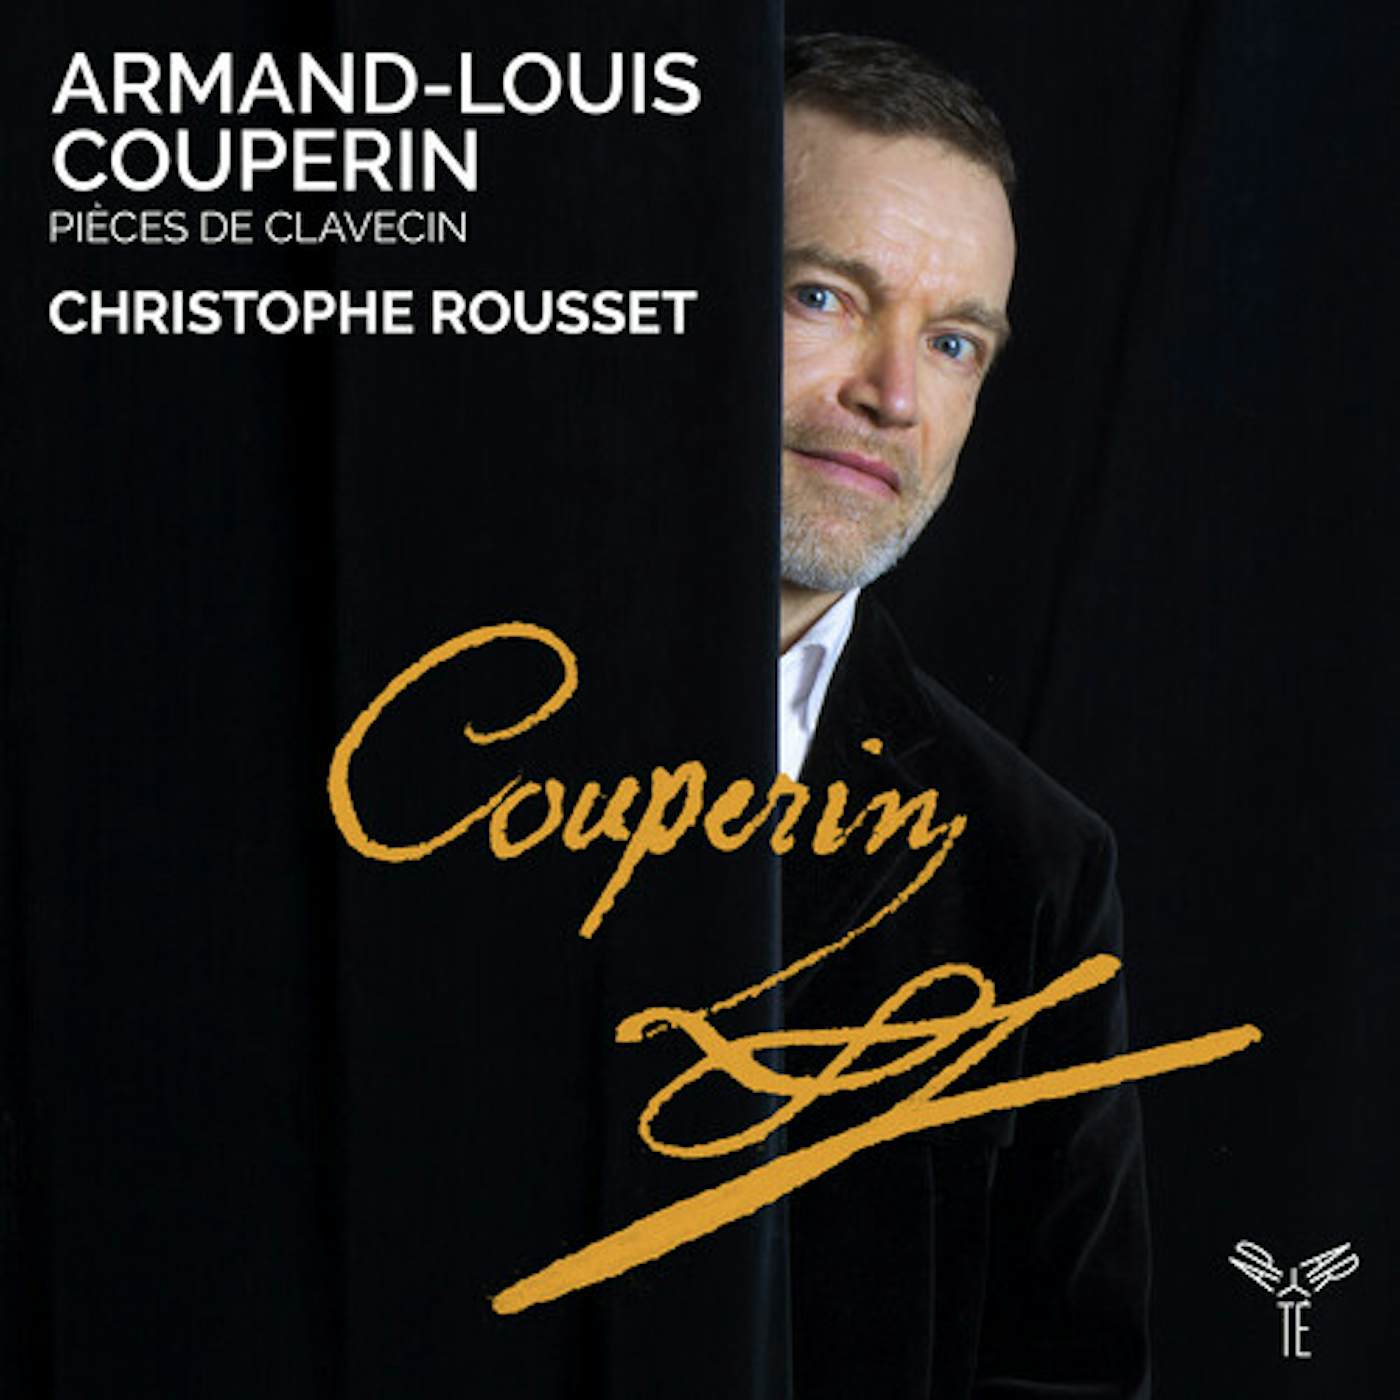 Christophe Rousset ARMAND-LOUIS COUPERIN: PIECES DE CLAVECIN CD